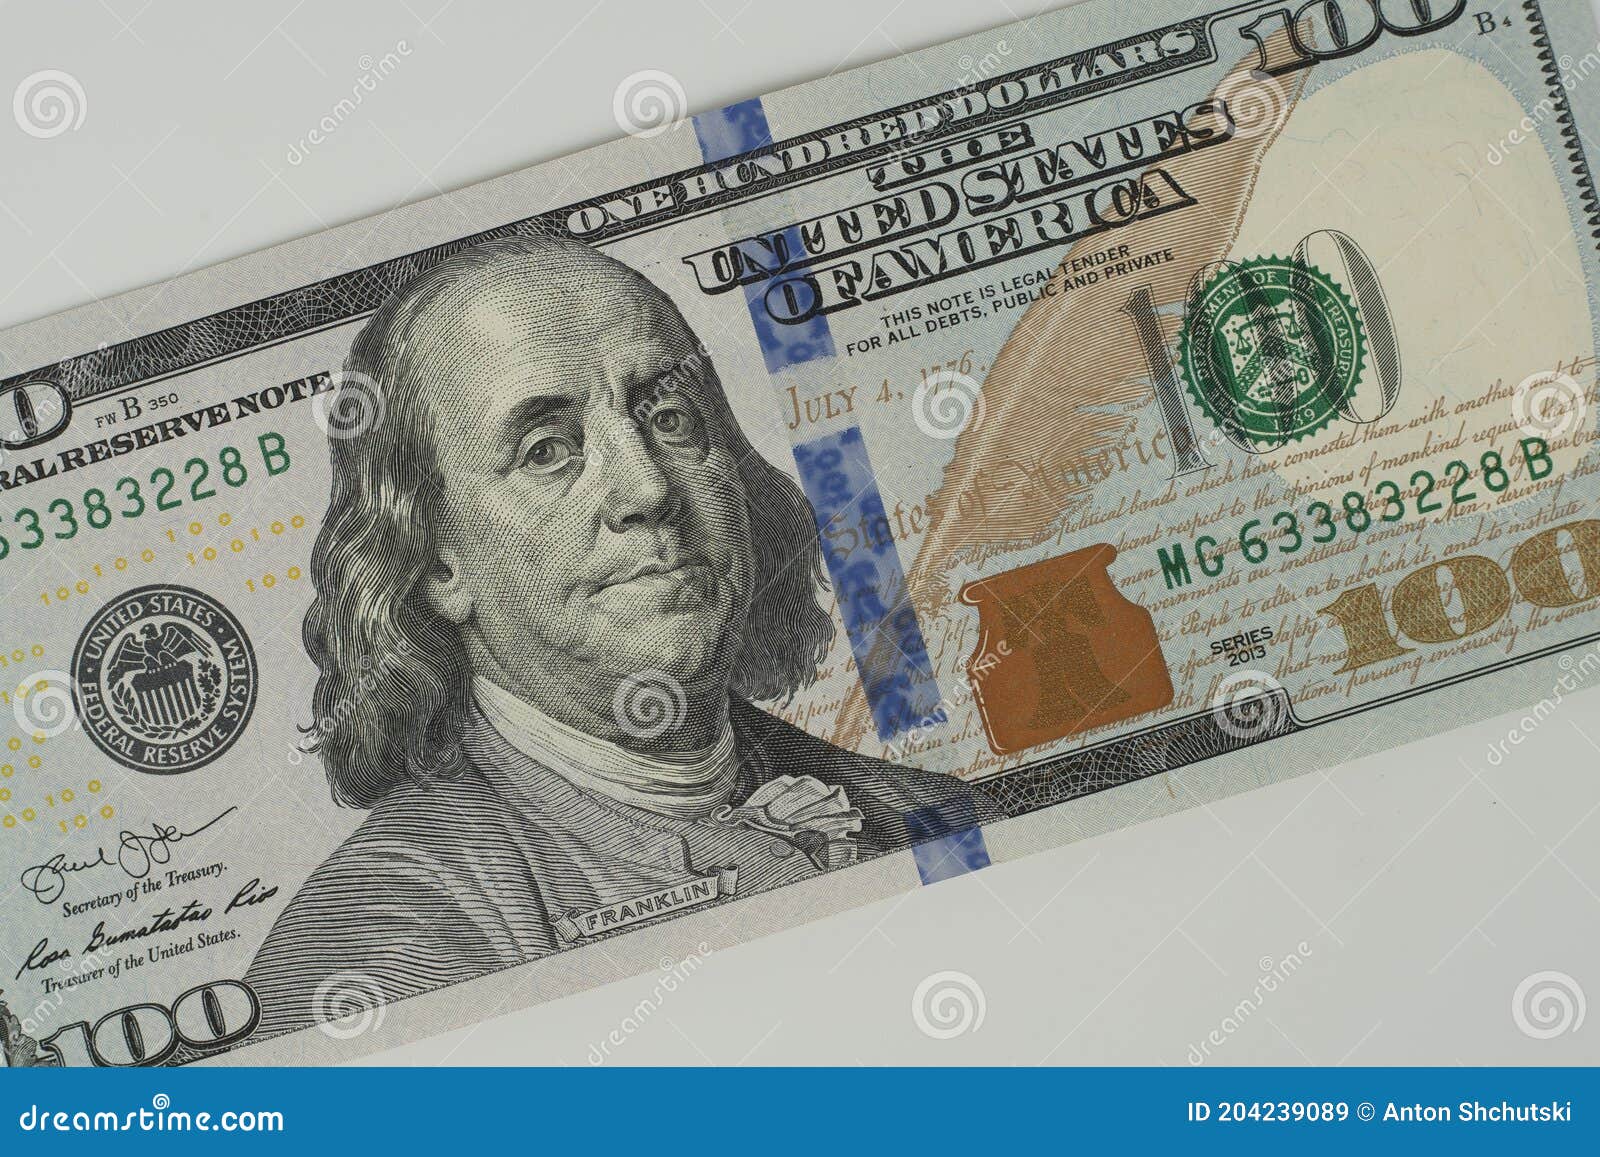  Ambesonne - Caja para dinero, diseño de billetes de dólares de  la reserva federal de los Estados Unidos con el retrato de Ben Franklin,  caja organizadora de metal con tapa, 7.2